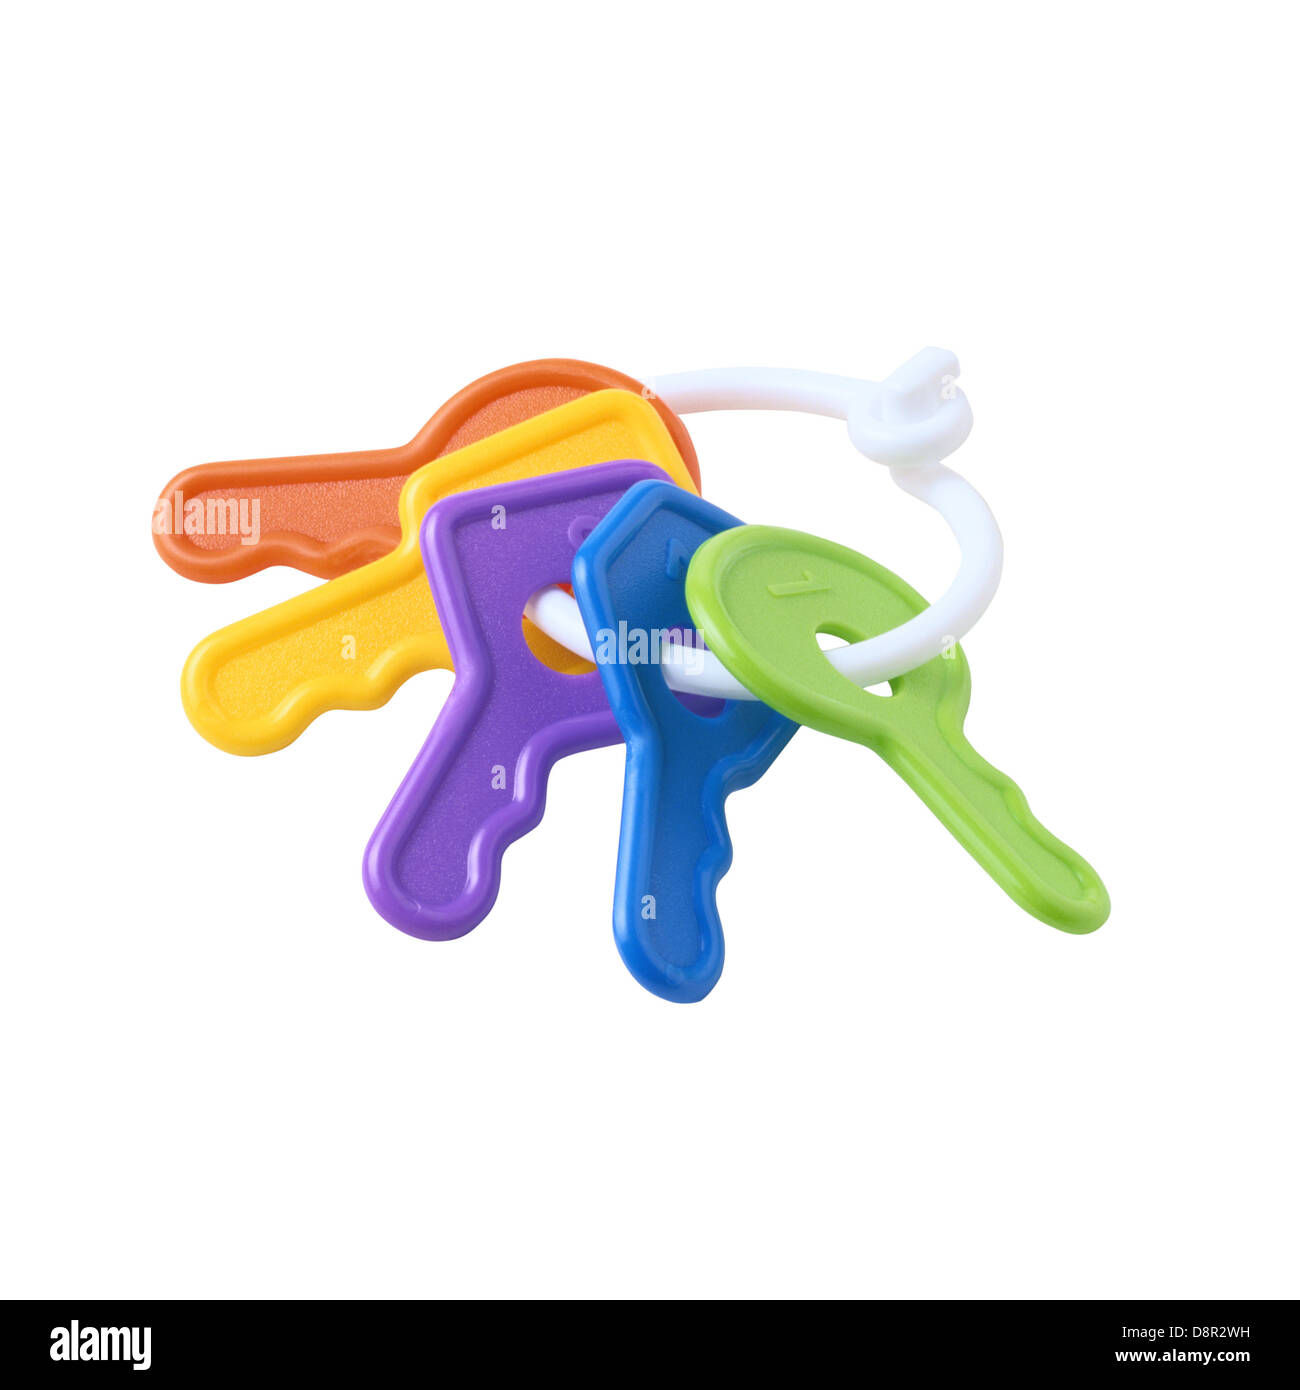 Children's toy  keys Stock Photo